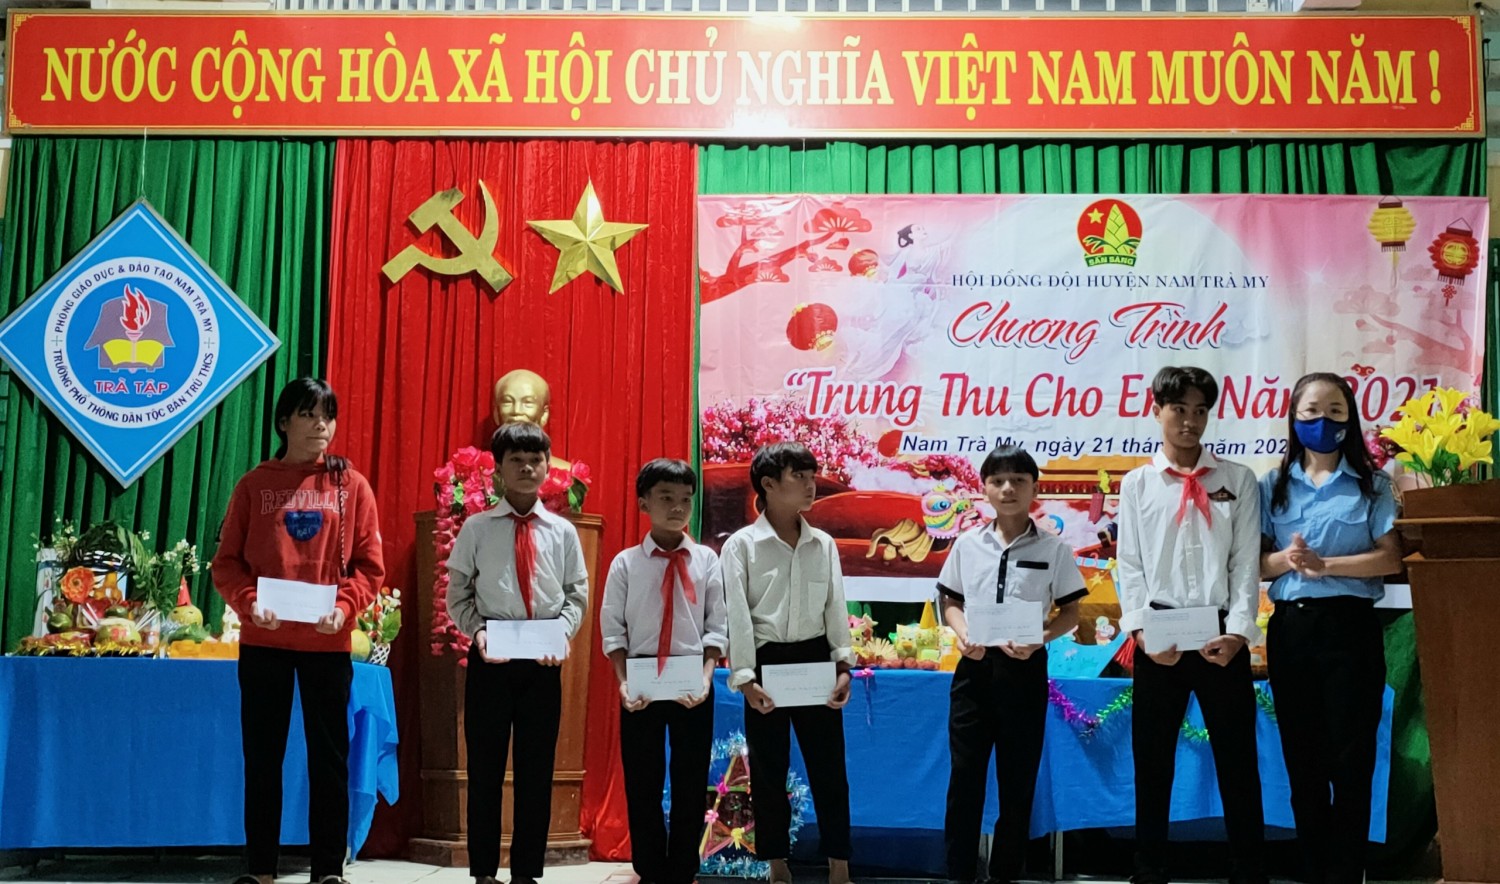 Huyện đoàn, Hội đồng đội huyện Nam Trà My tặng quà Trung thu cho thiếu nhi